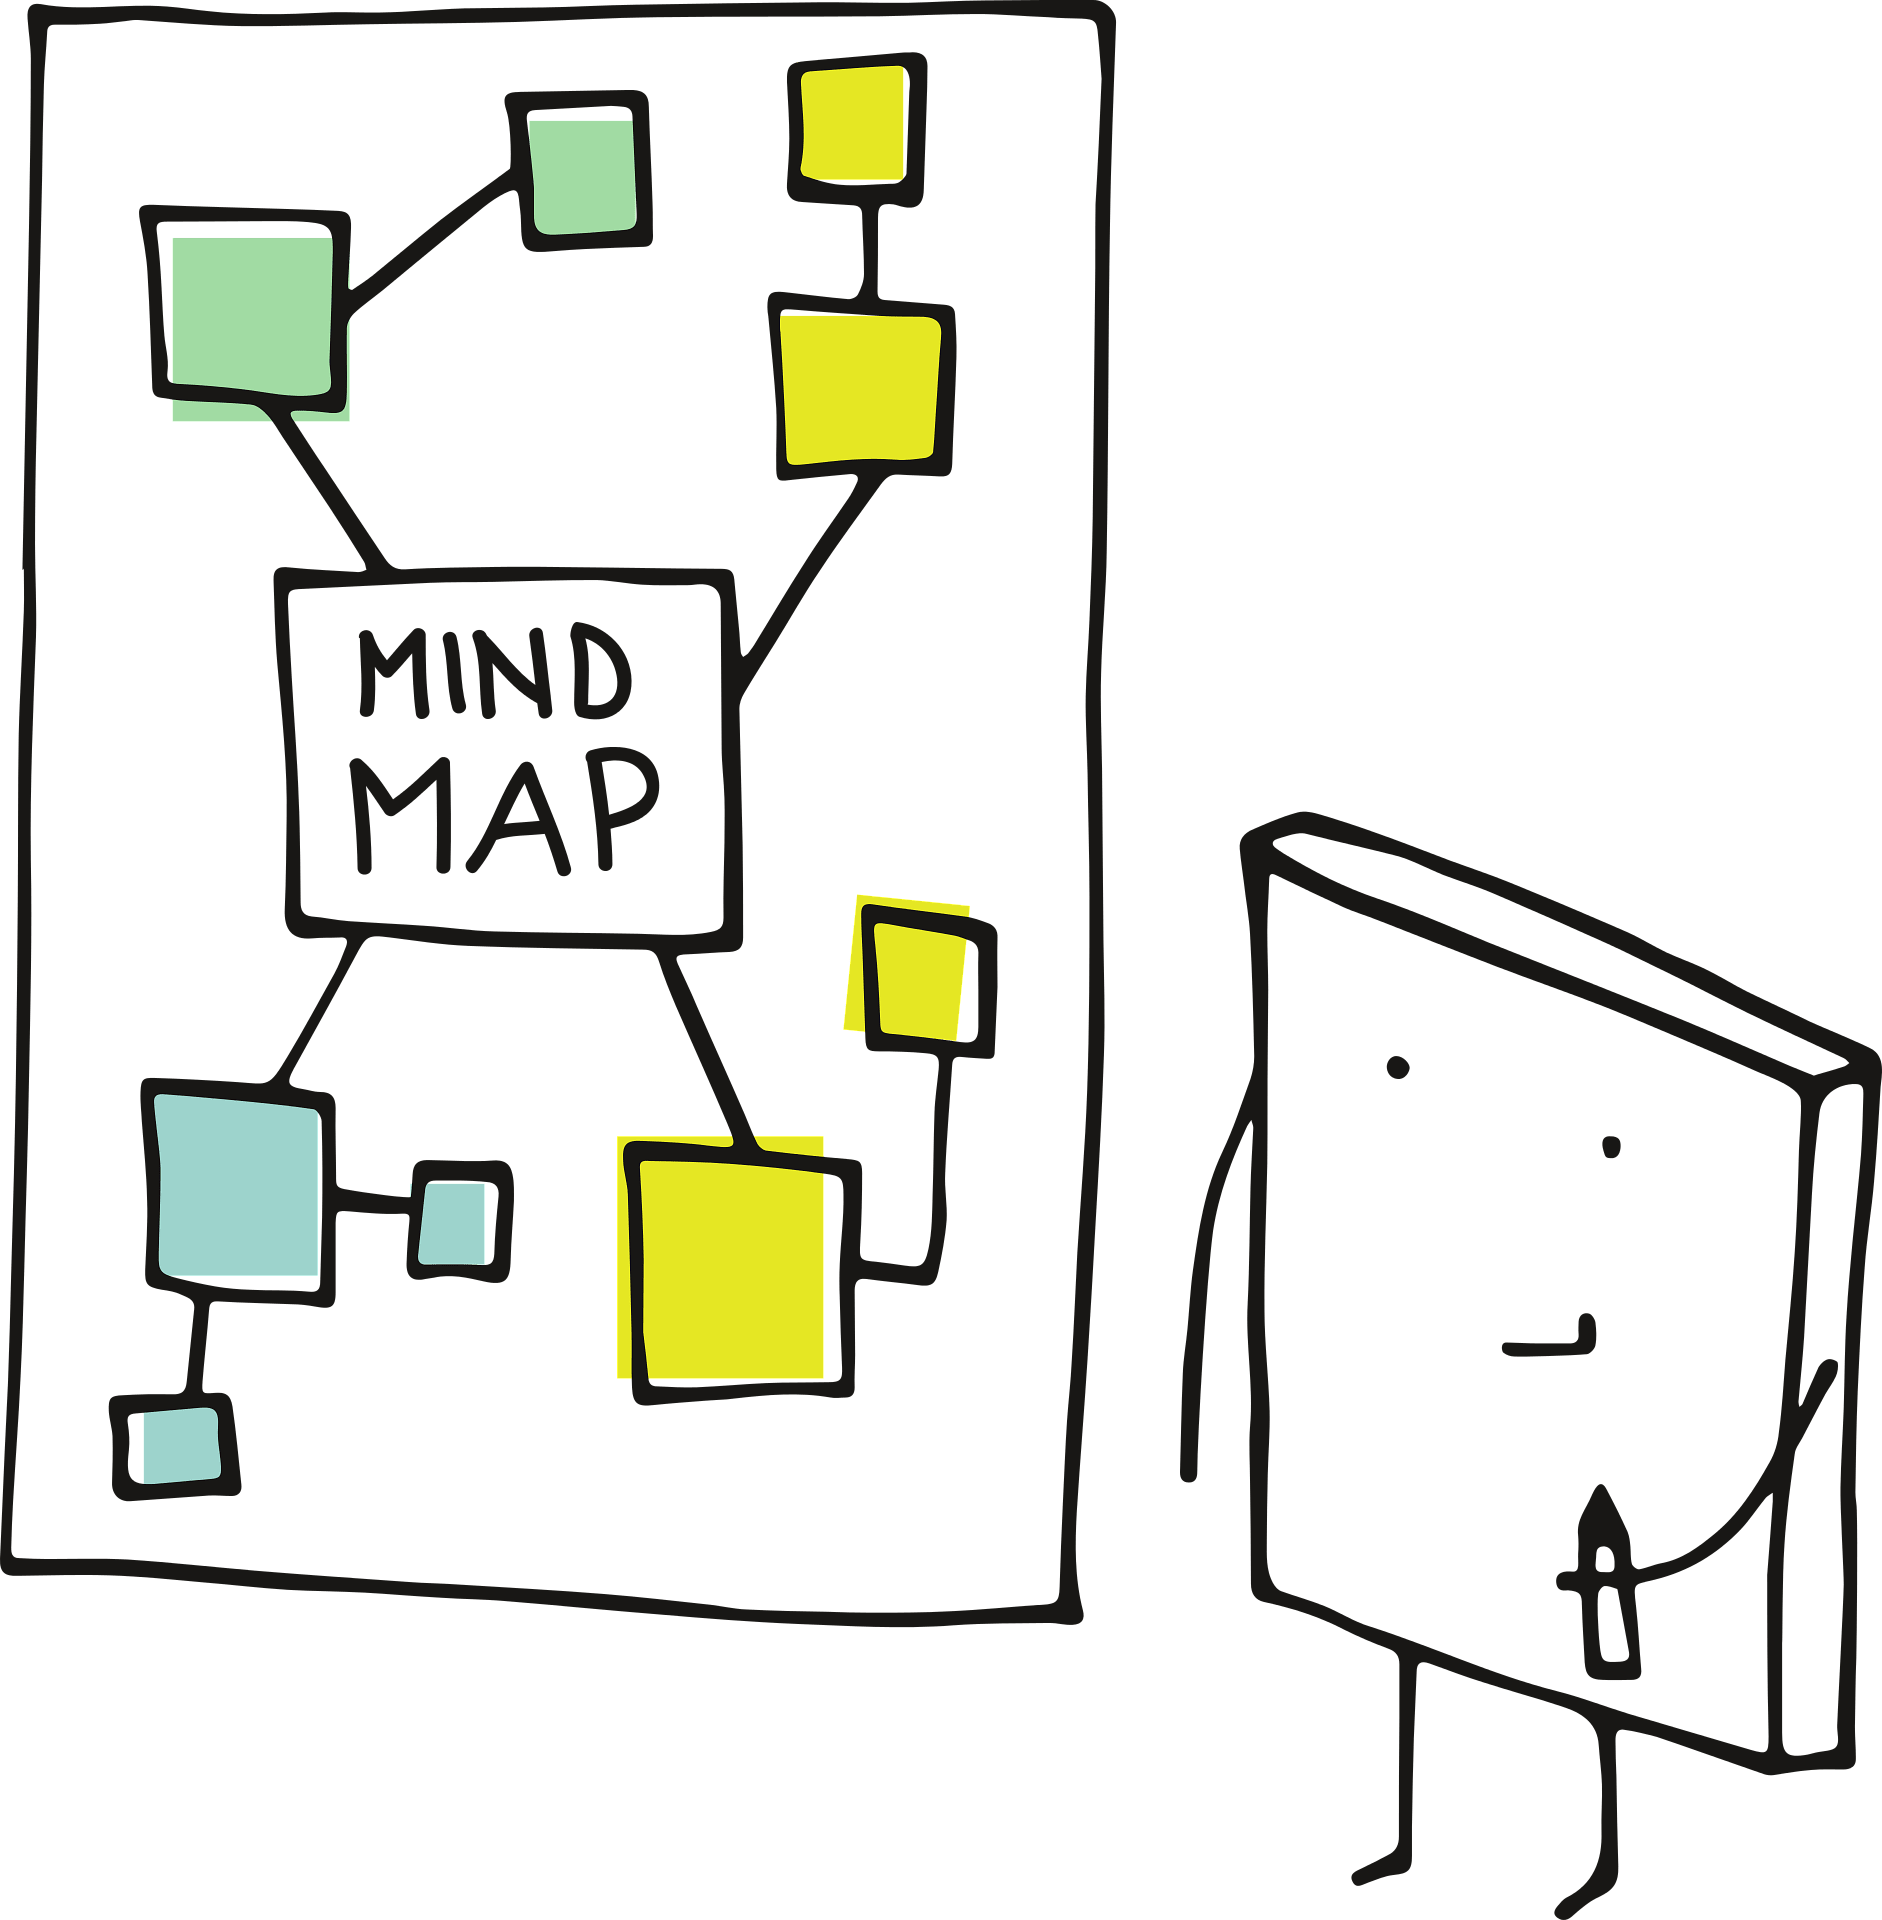 Comment construire une carte mentale ou mind map ?